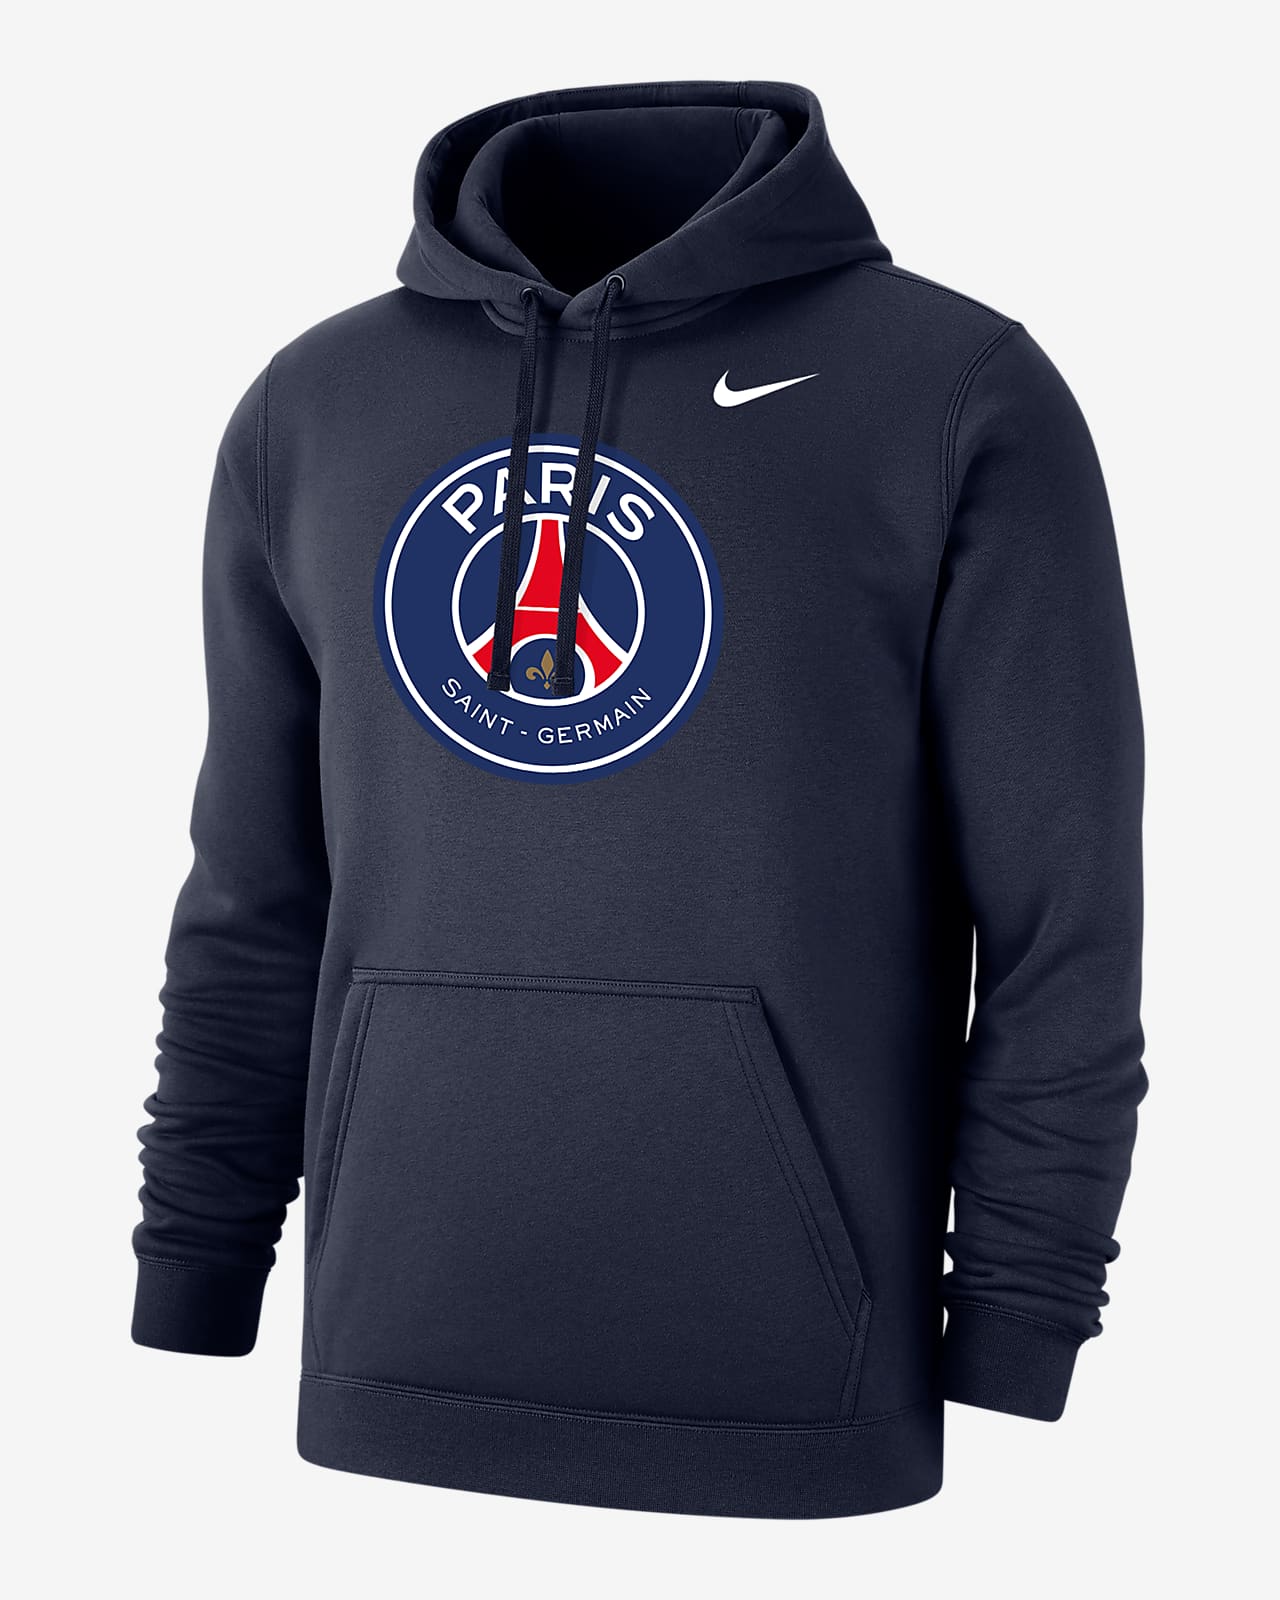 Paris Saint-Germain Club Fleece Men's Pullover Hoodie